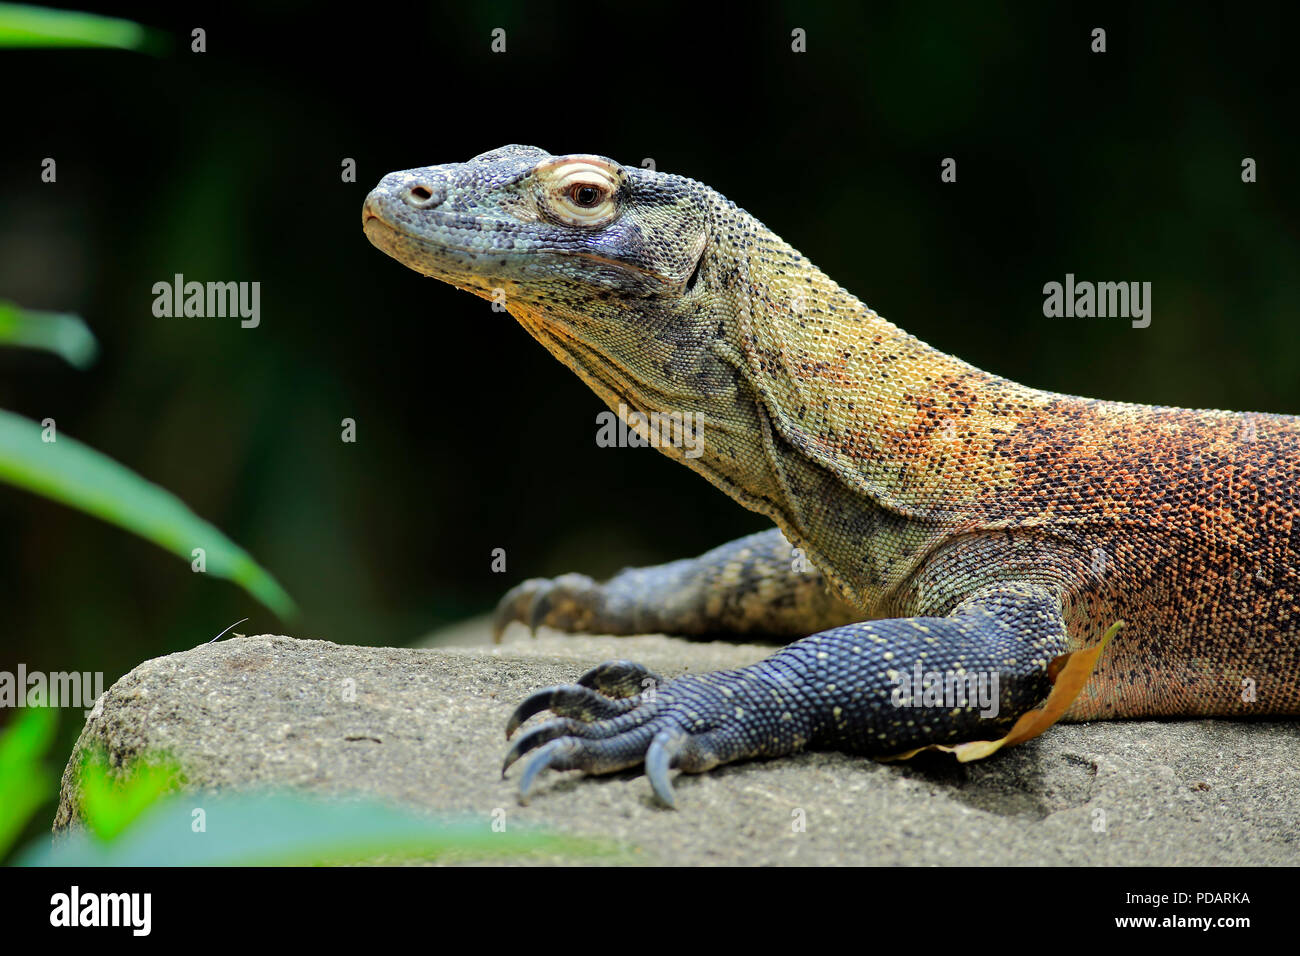 Komodo Dragon, adult on rock portrait, captive, Singapore, Asia, Varanus komodoensis Stock Photo